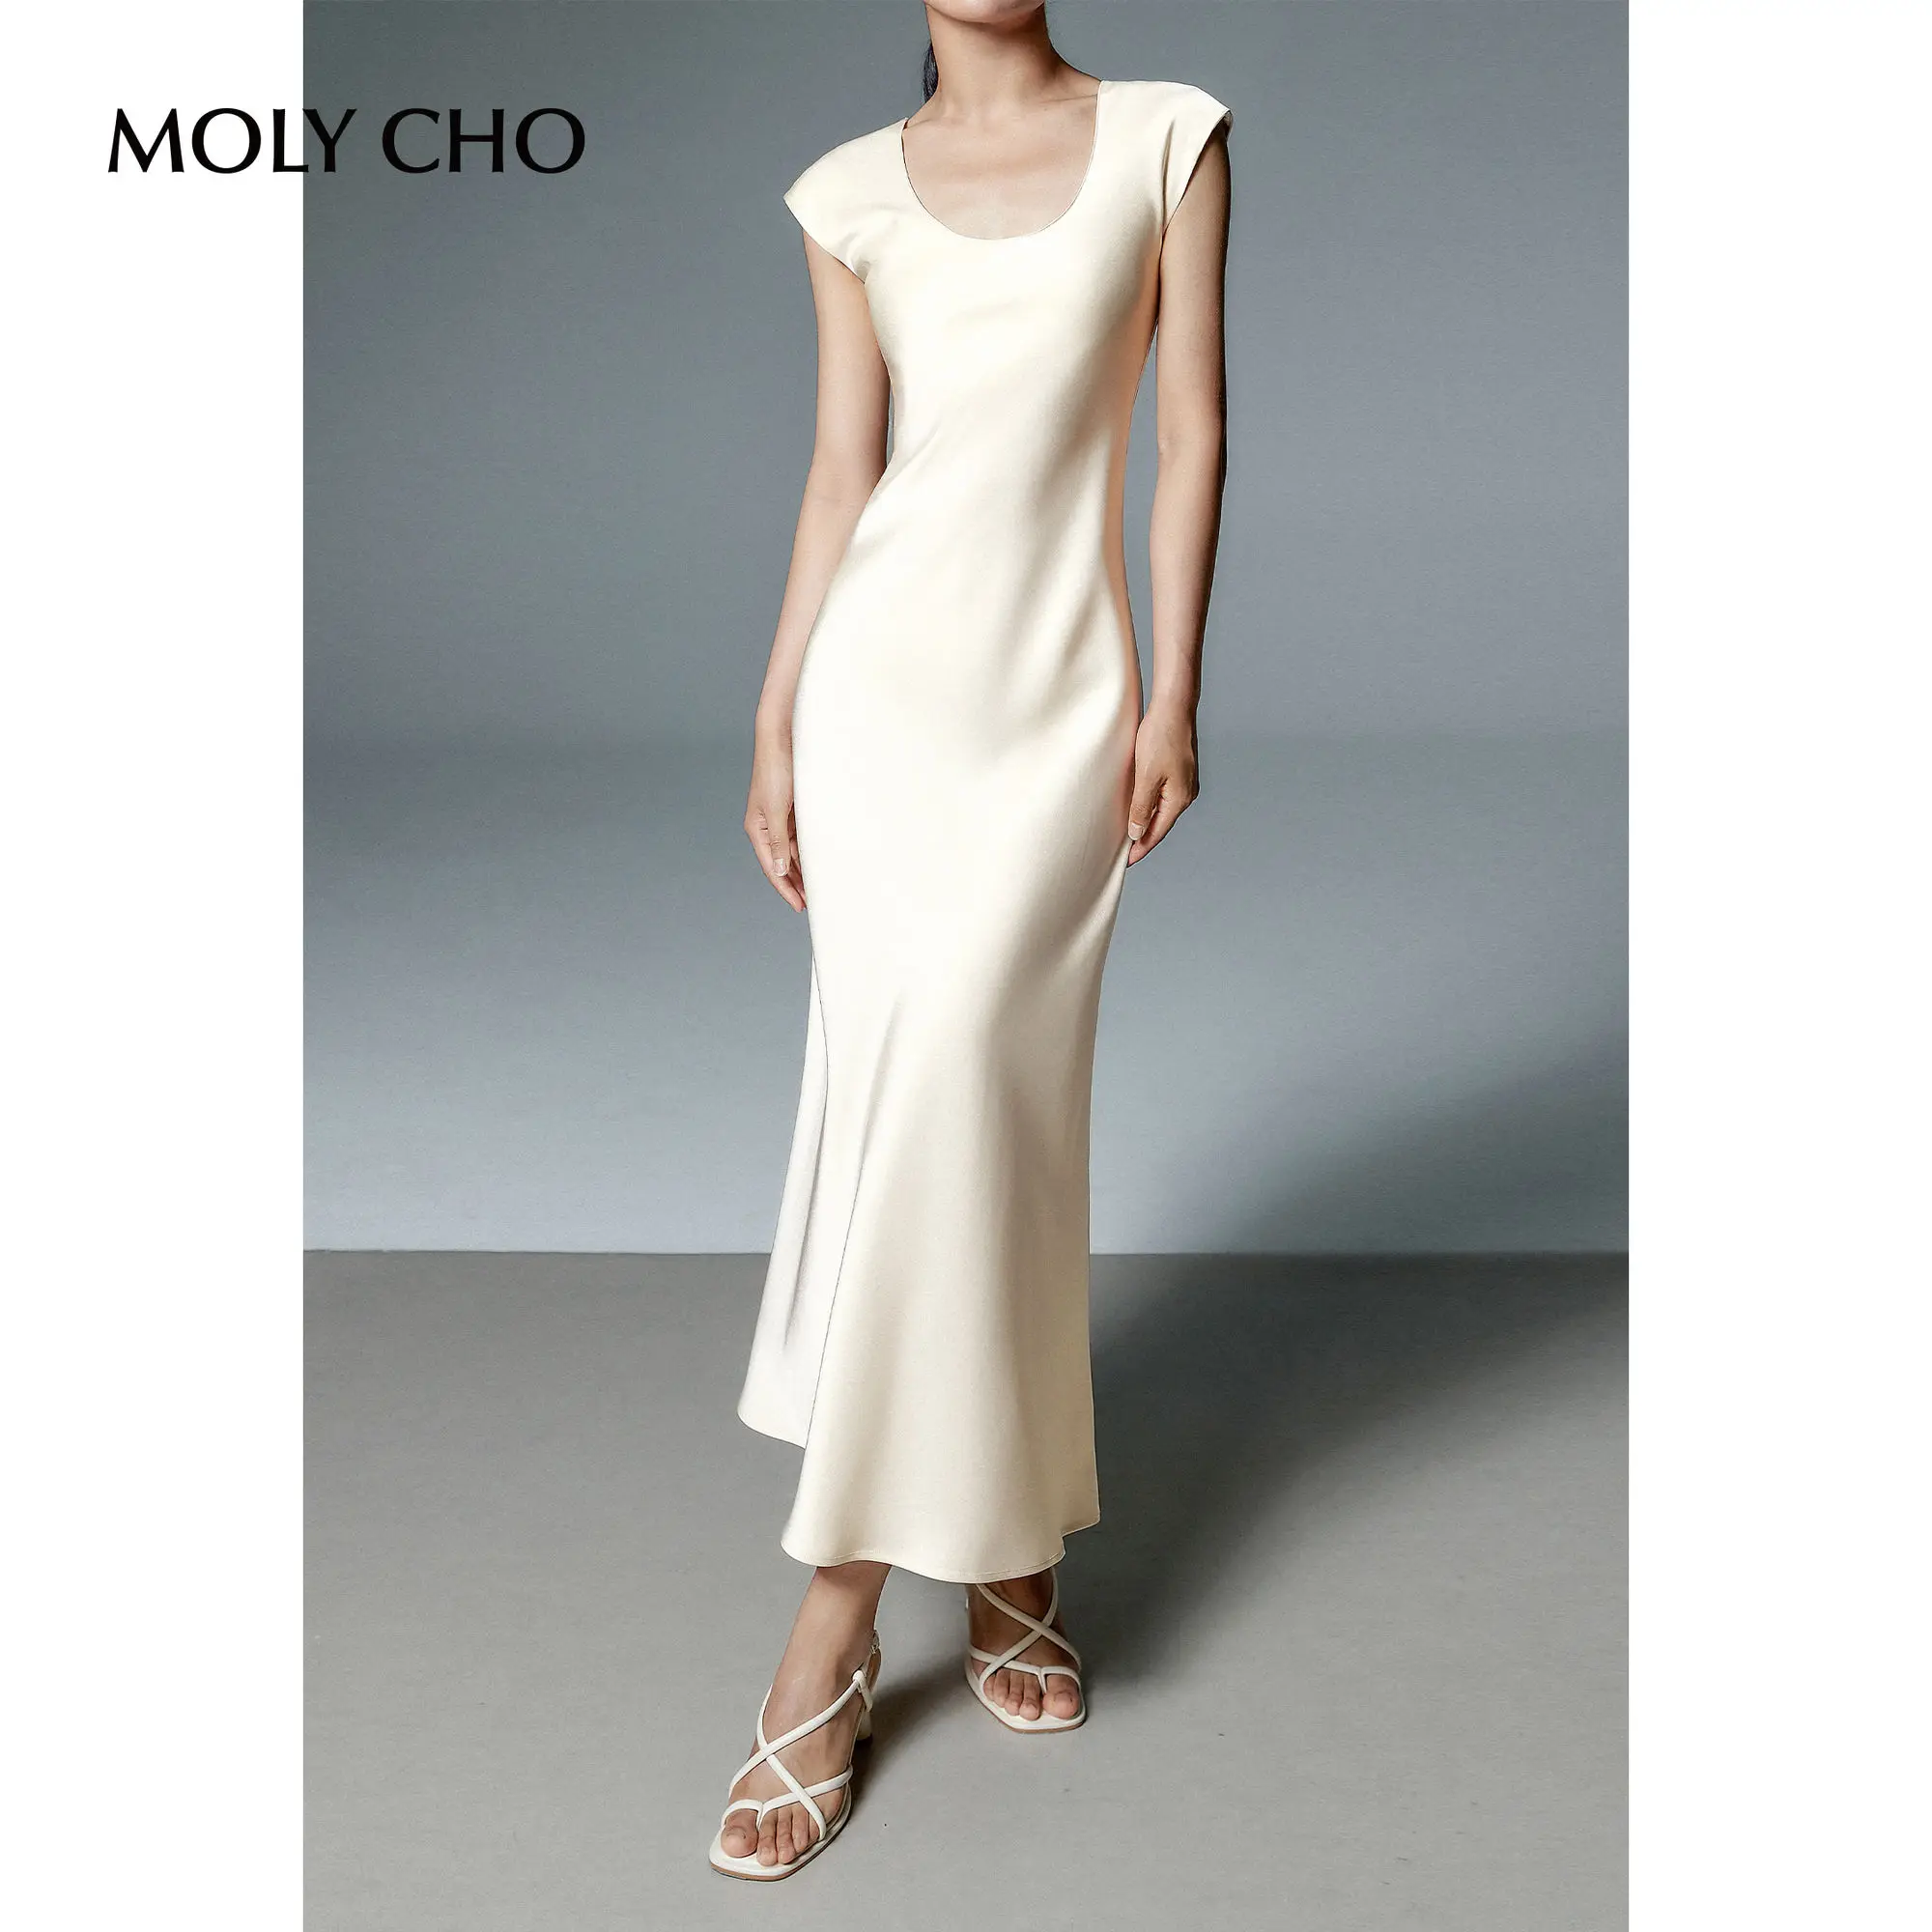 Low Neck Sleeveless Satin Dress Women's Summer Simple Style Waist Long Dress Neck Mid length Dress